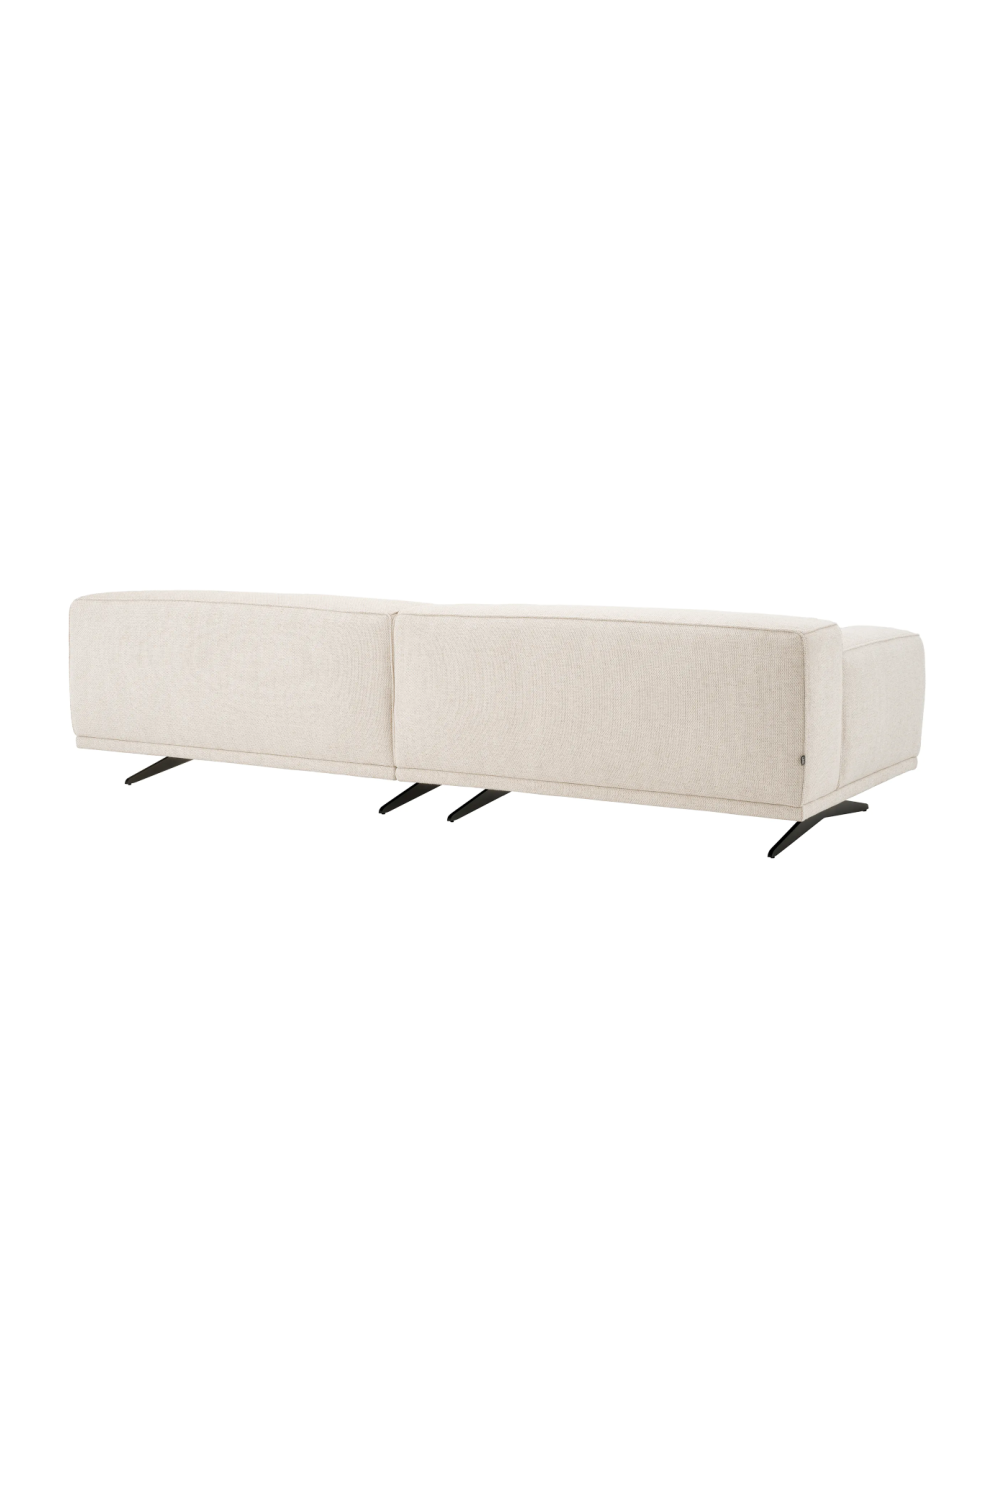 Cream Angular Modern Sofa | Eichholtz Grasso | Oroa.com